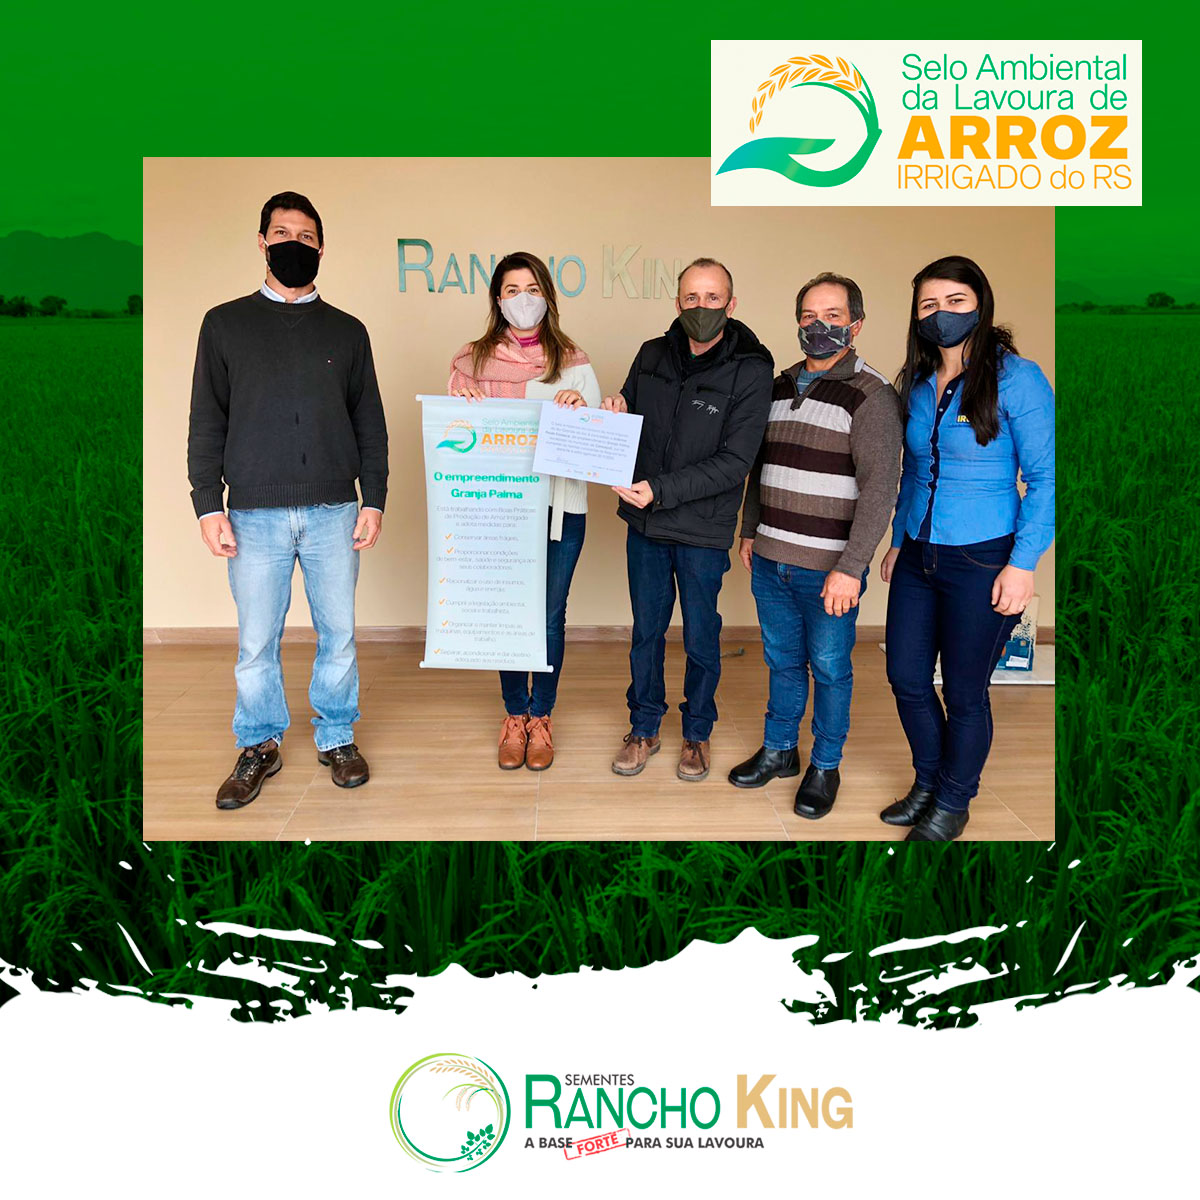 Rancho King recebe Selo Ambiental da Lavoura de Arroz Irrigado